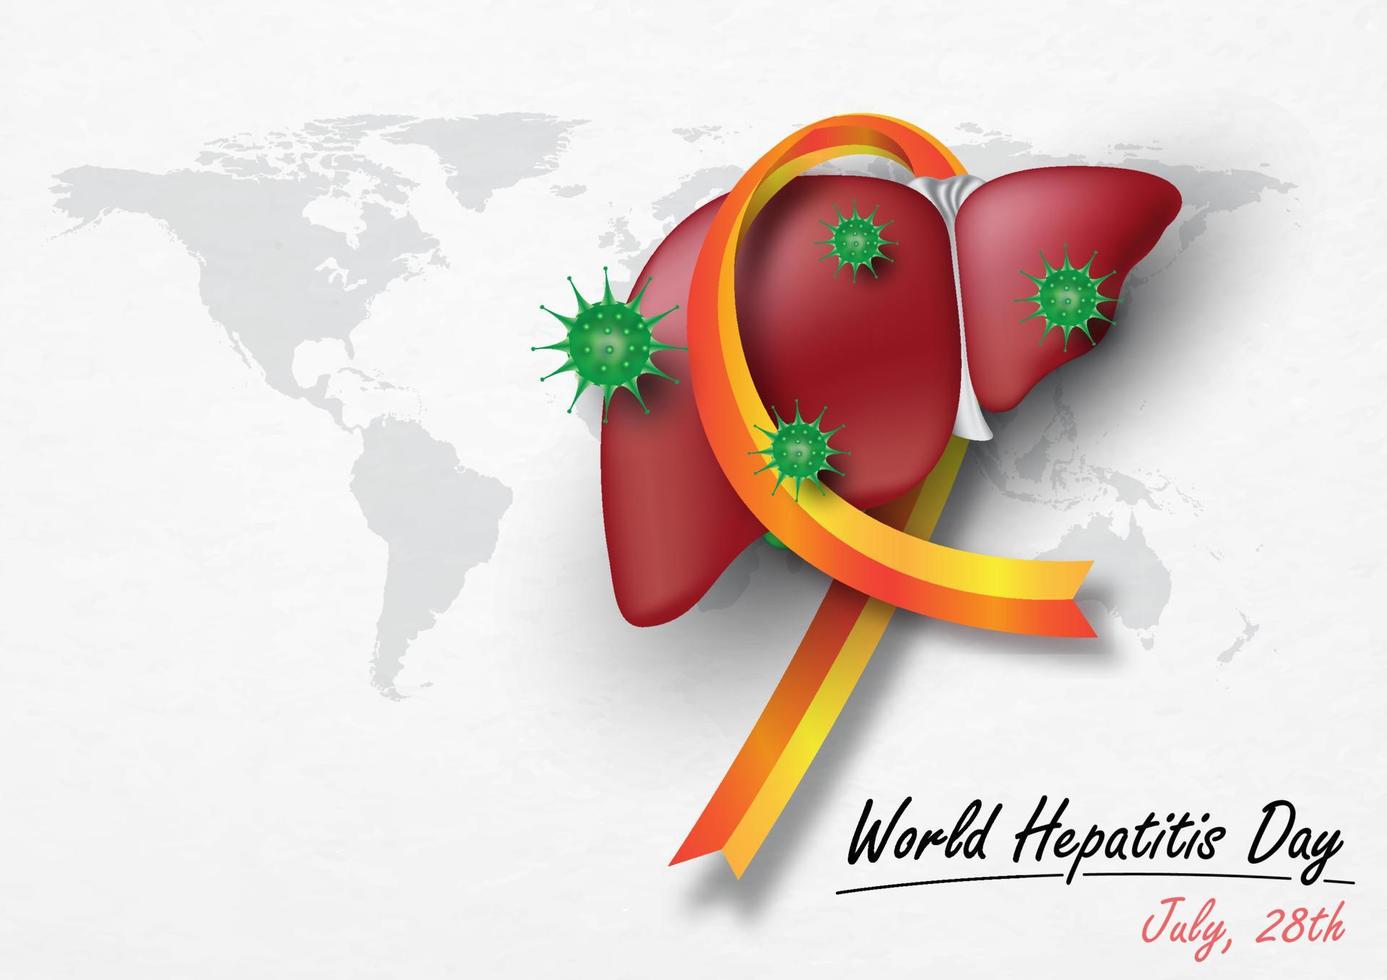 hígado humano con símbolos de virus en una cinta de campaña y redacción del día mundial de la hepatitis, en el mapa mundial y fondo blanco. campaña de afiches en estilo 3d y diseño vectorial. vector